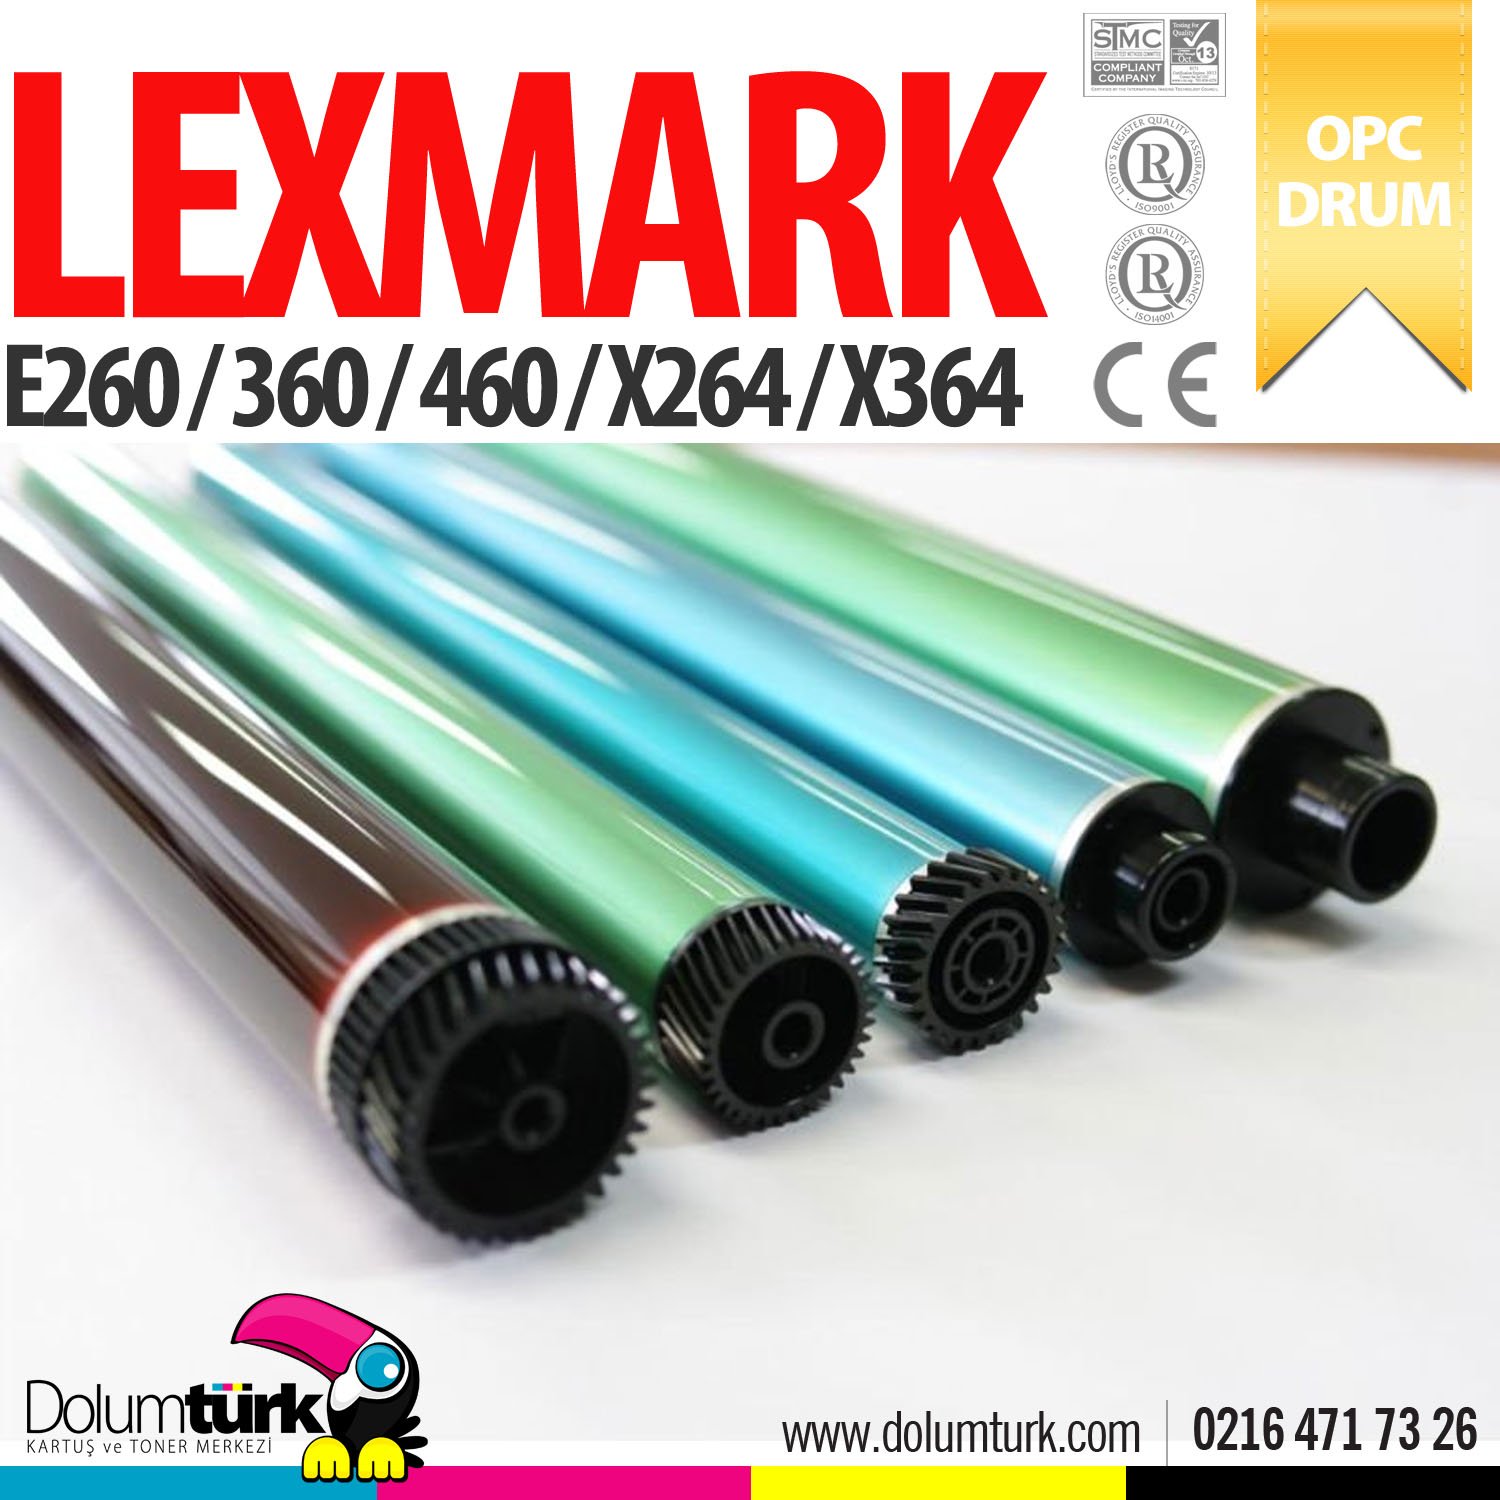 Lexmark E260 / E360 / E460 / X264 / X364 Tek Drum